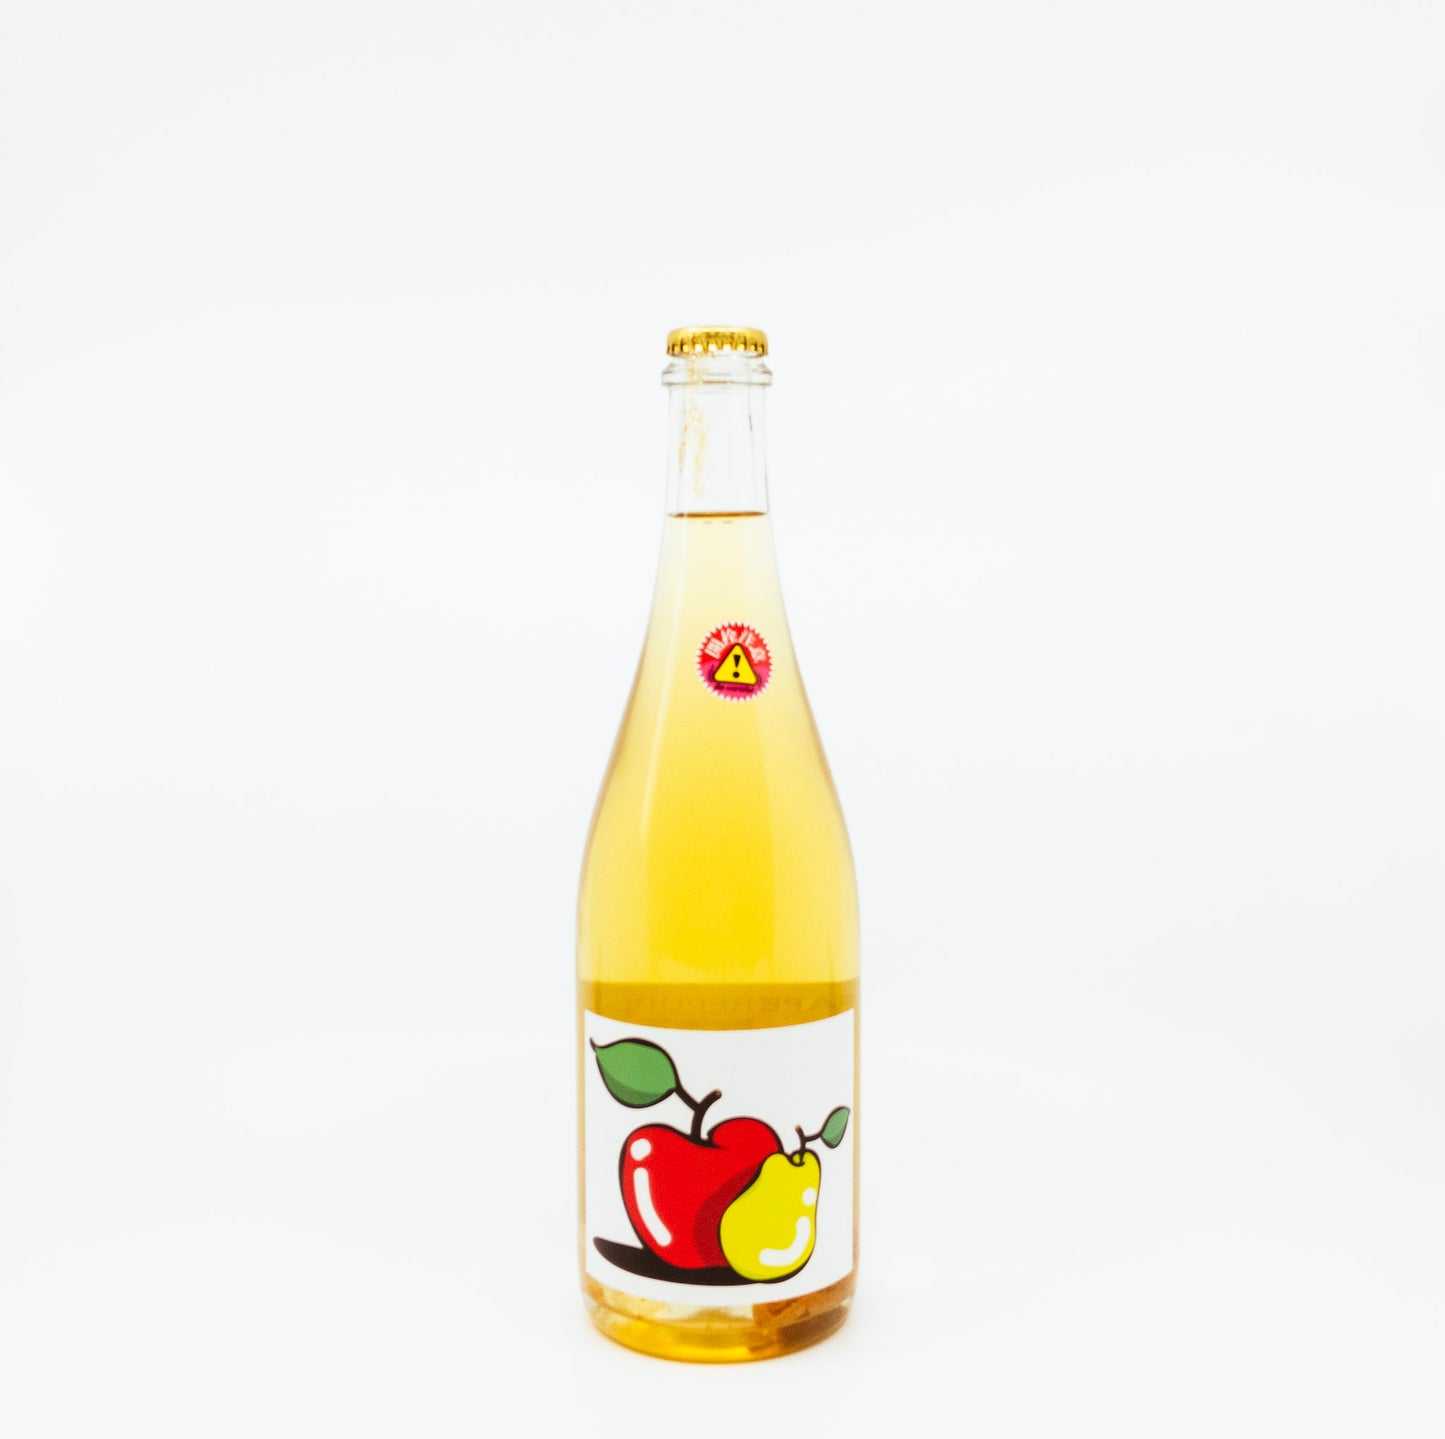 Grape Republic "Nanyo" Yamagata Cider 2020